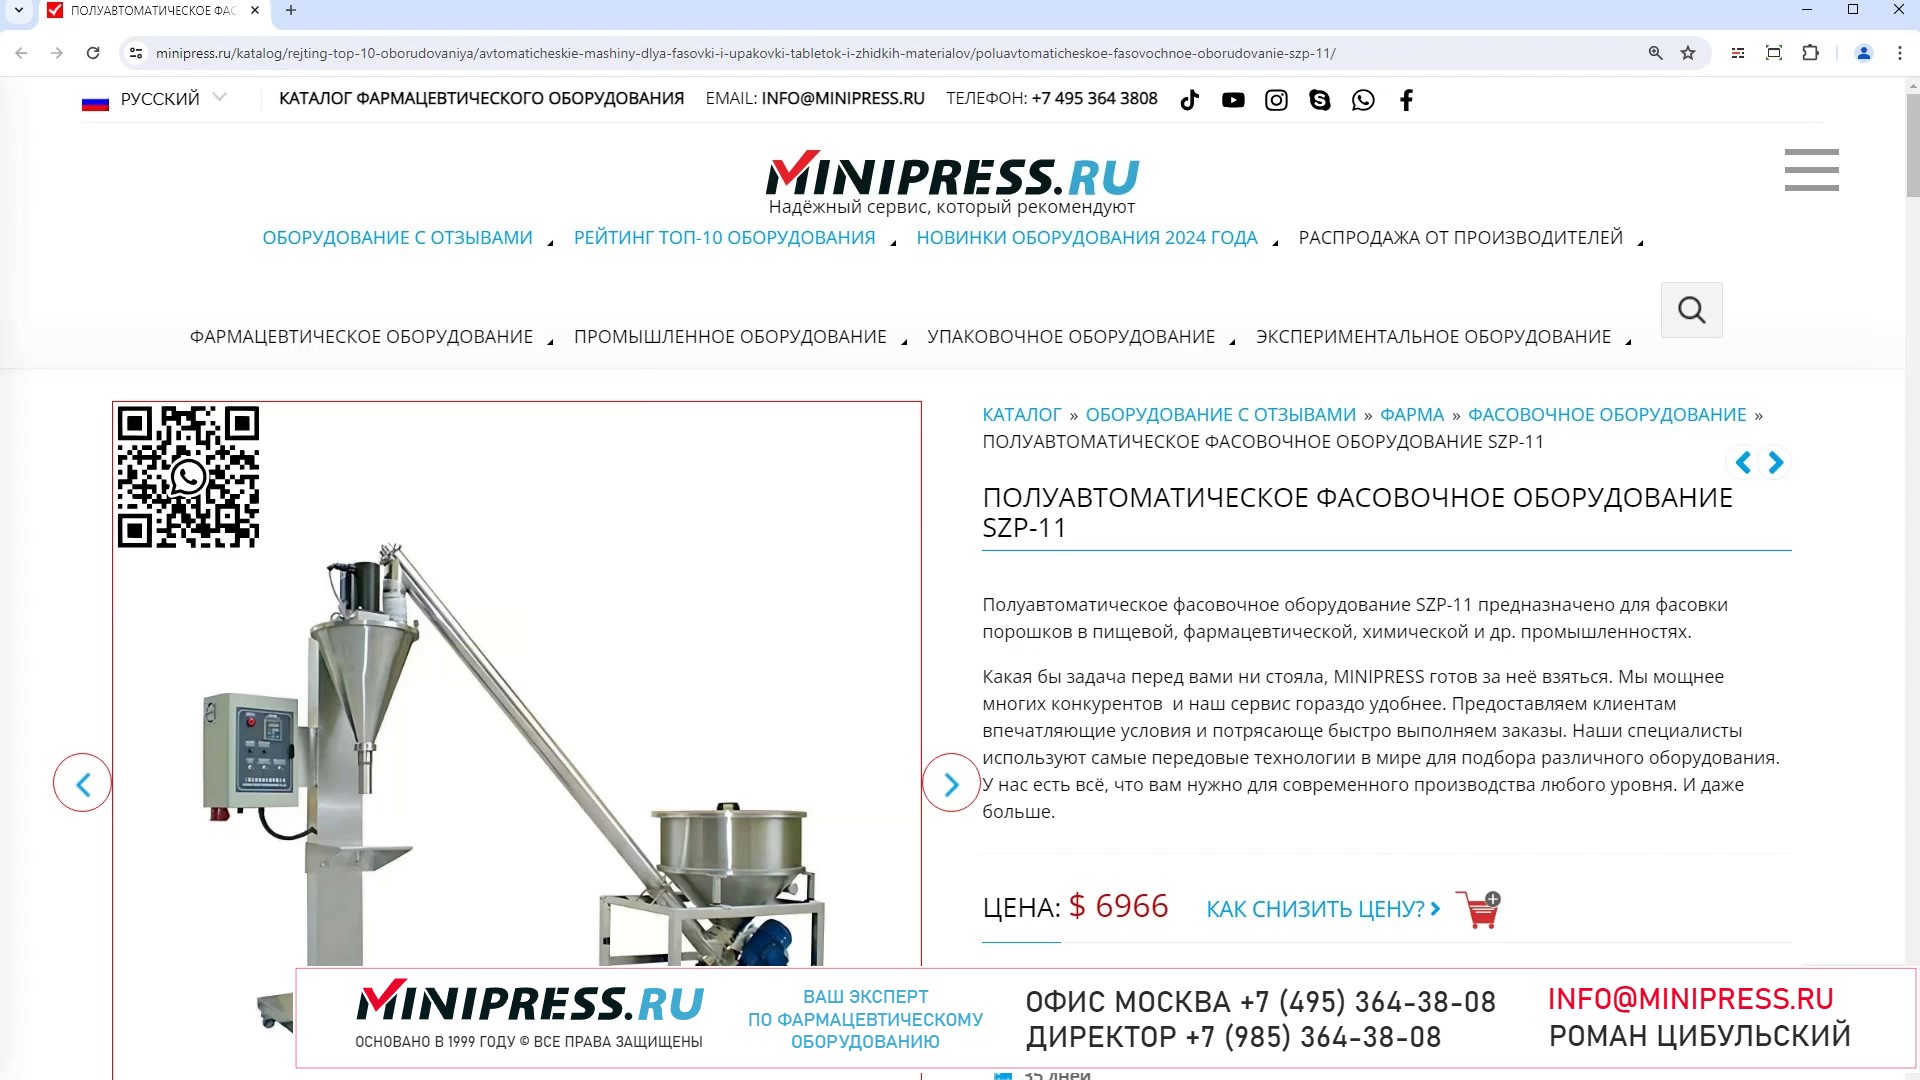 Minipress.ru Полуавтоматическое фасовочное оборудование SZP-11